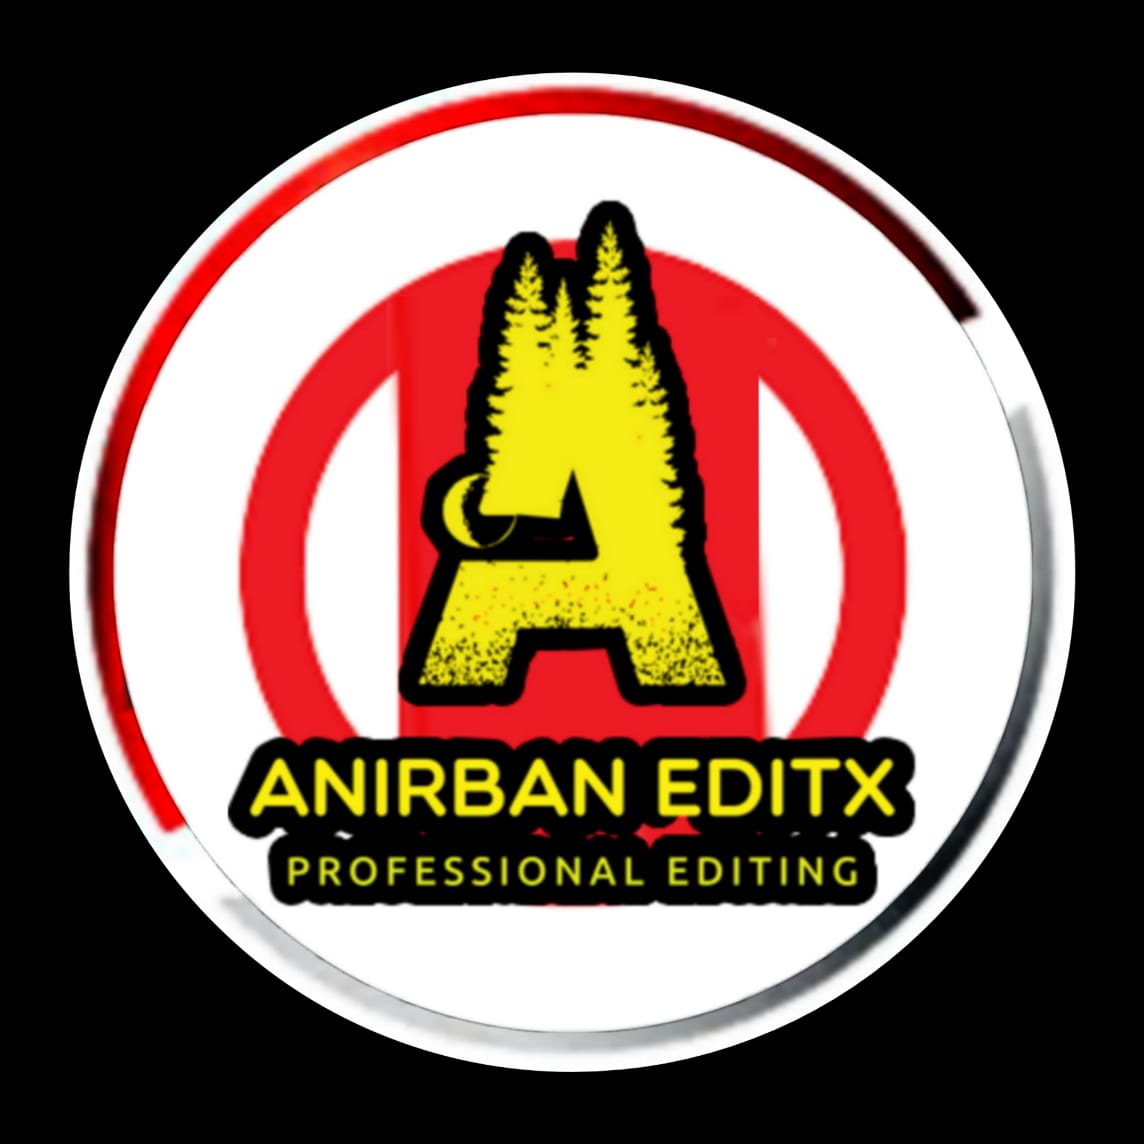 Anirban Editx